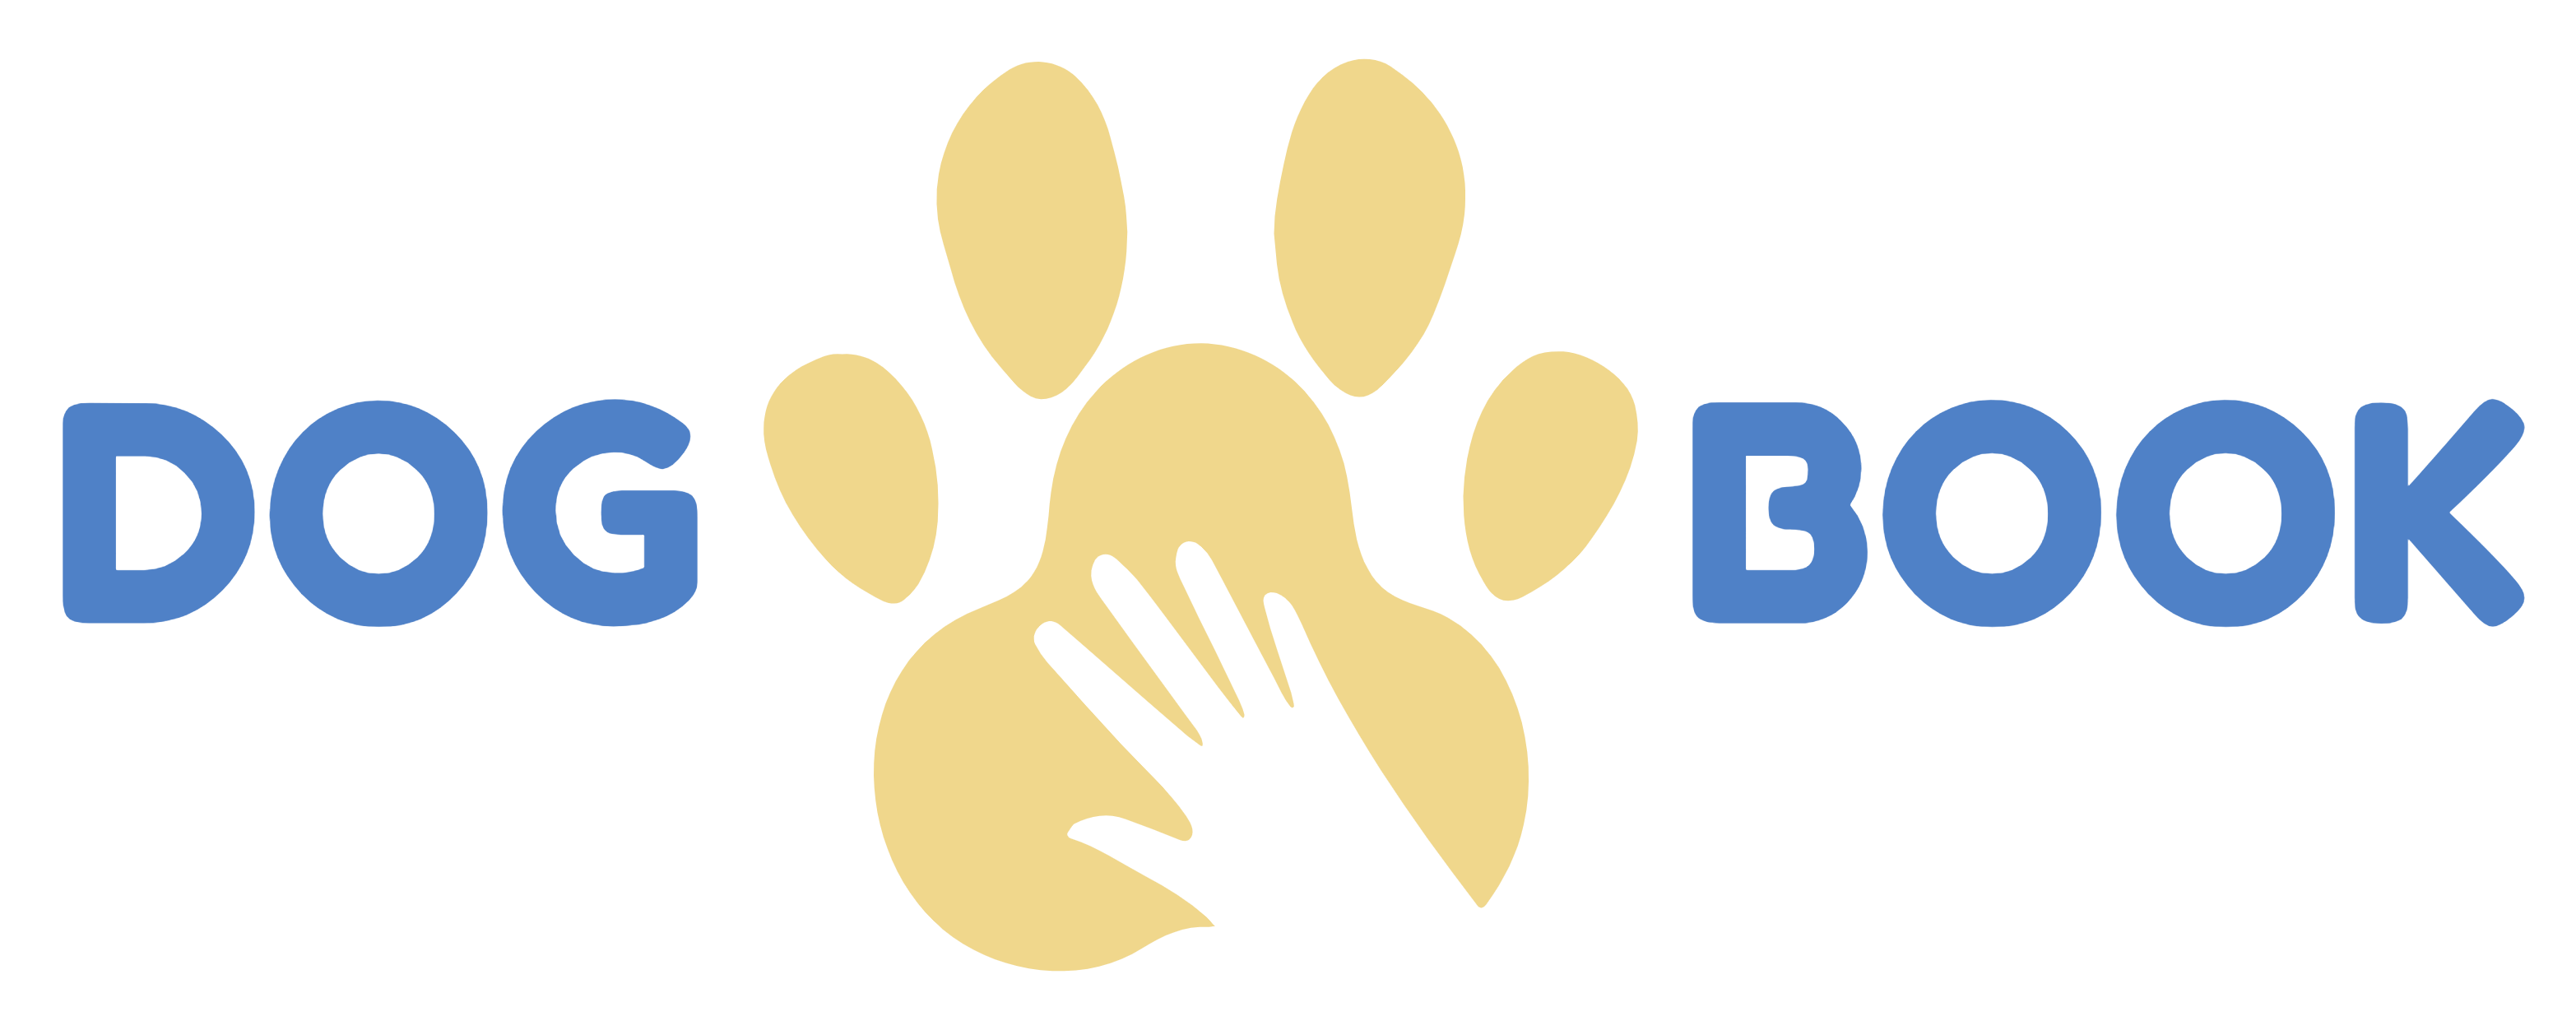 dog book logo